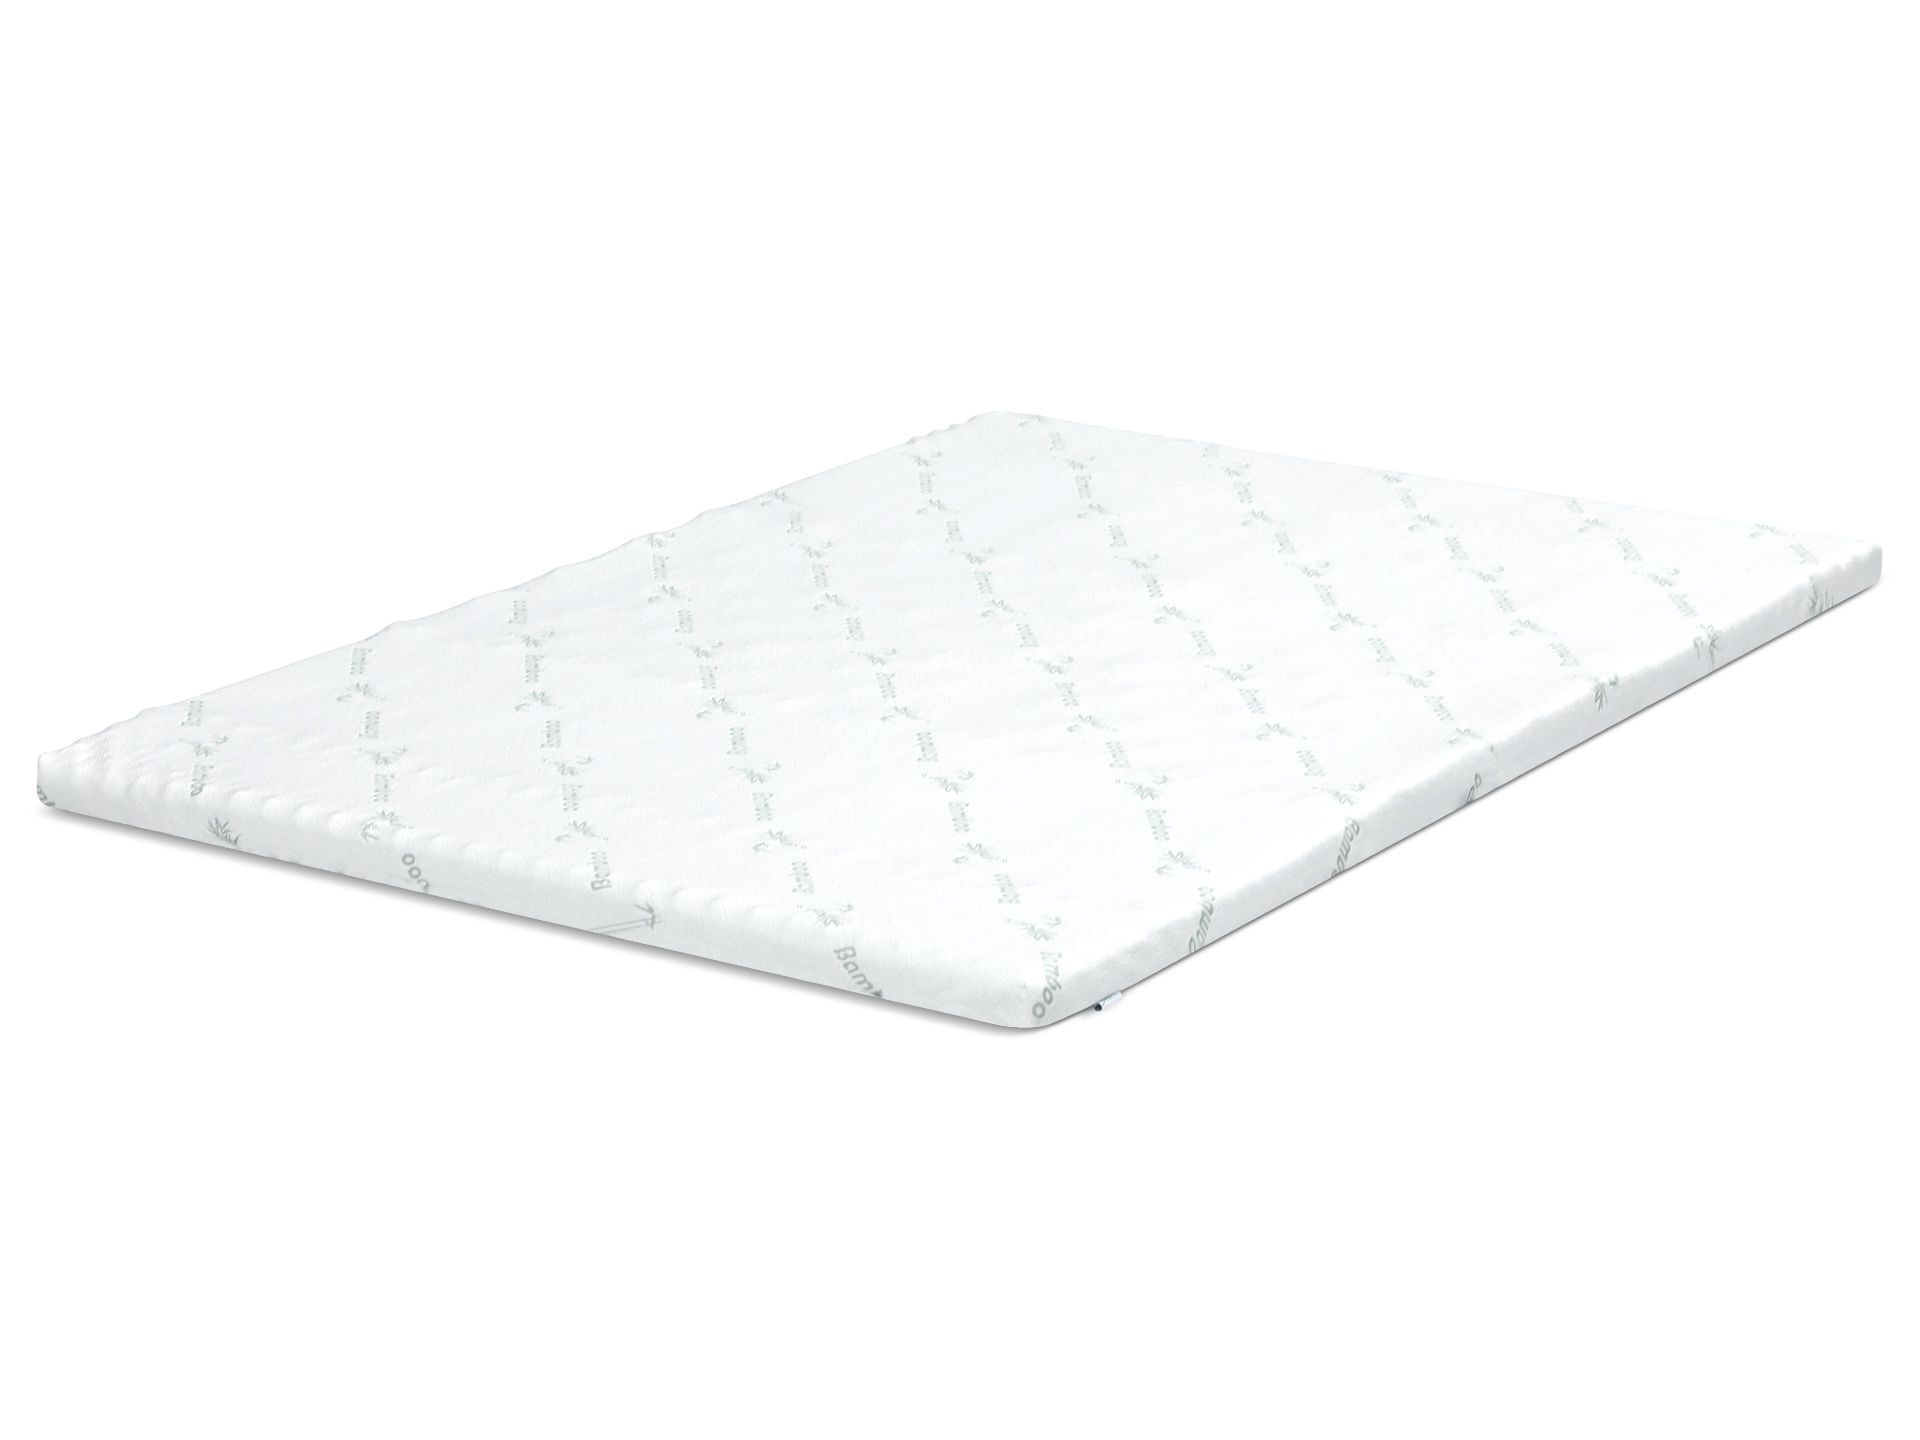 5 zone foam mattress pad walmart